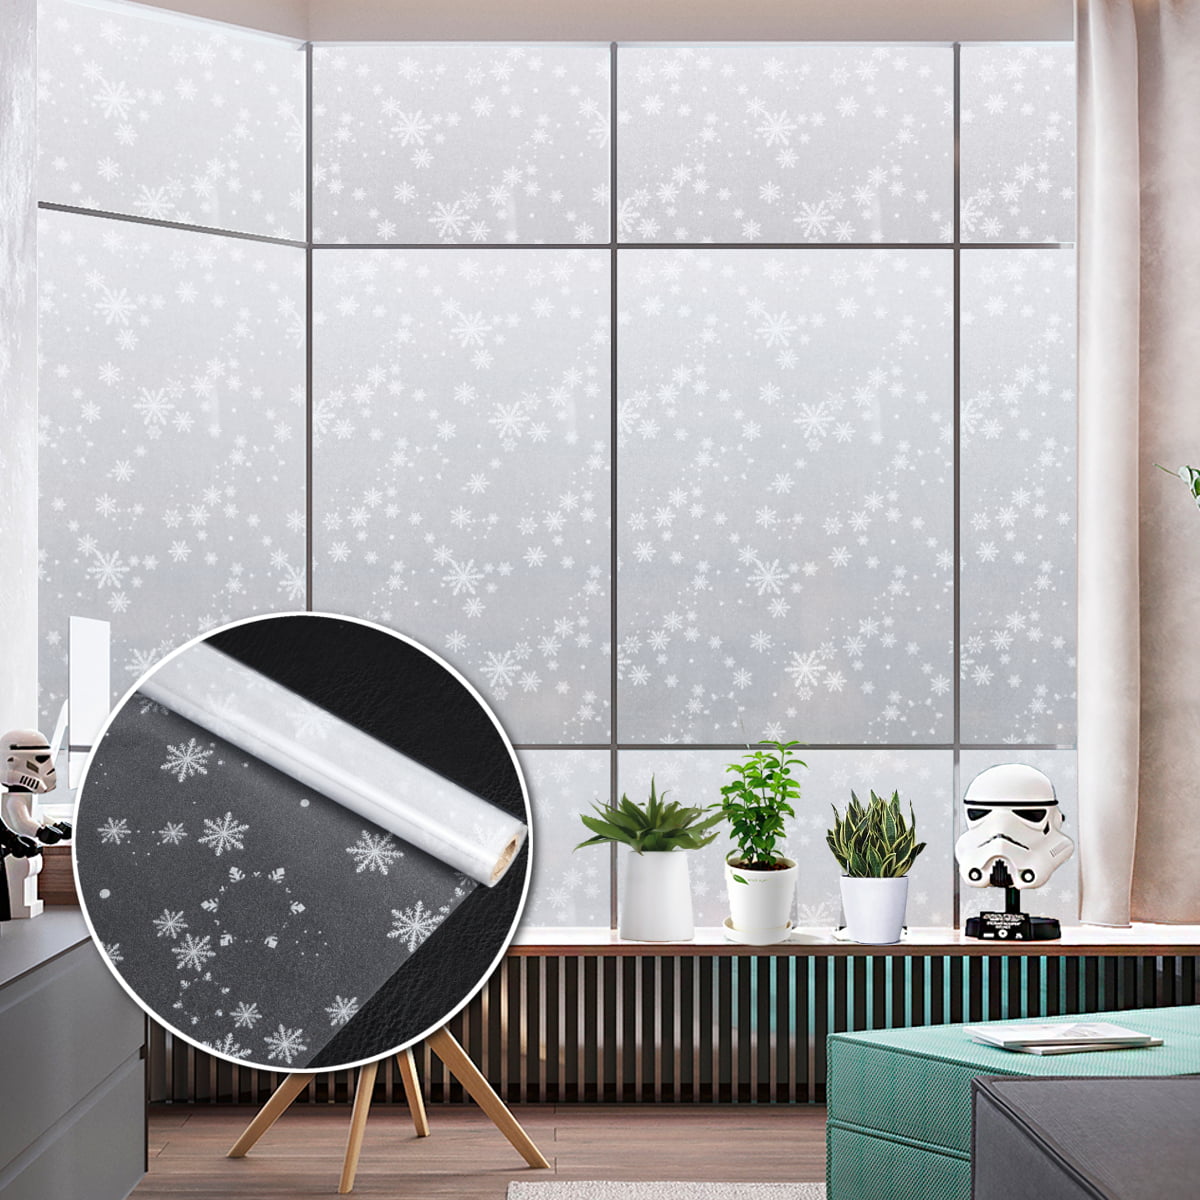 Window Film Sticker White Decorative Privacy Glass Home Office Decor 